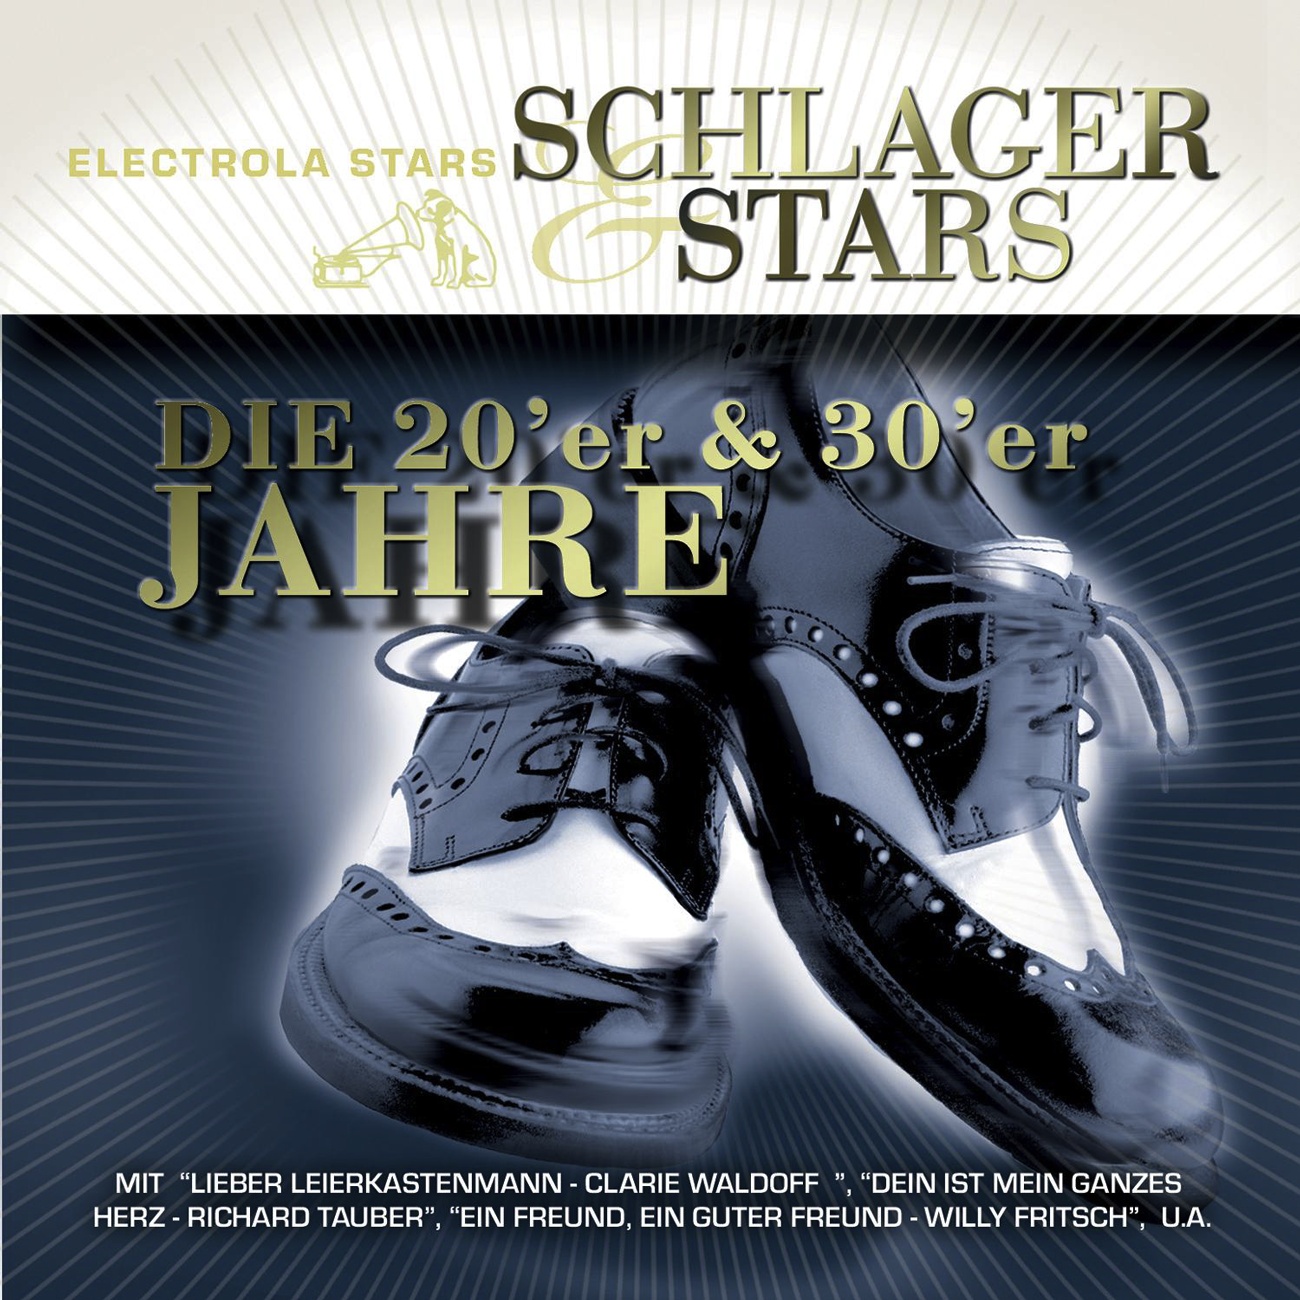 Das Gibt's Nur Einmal (Christel's Lied) (2004 Digital Remaster)